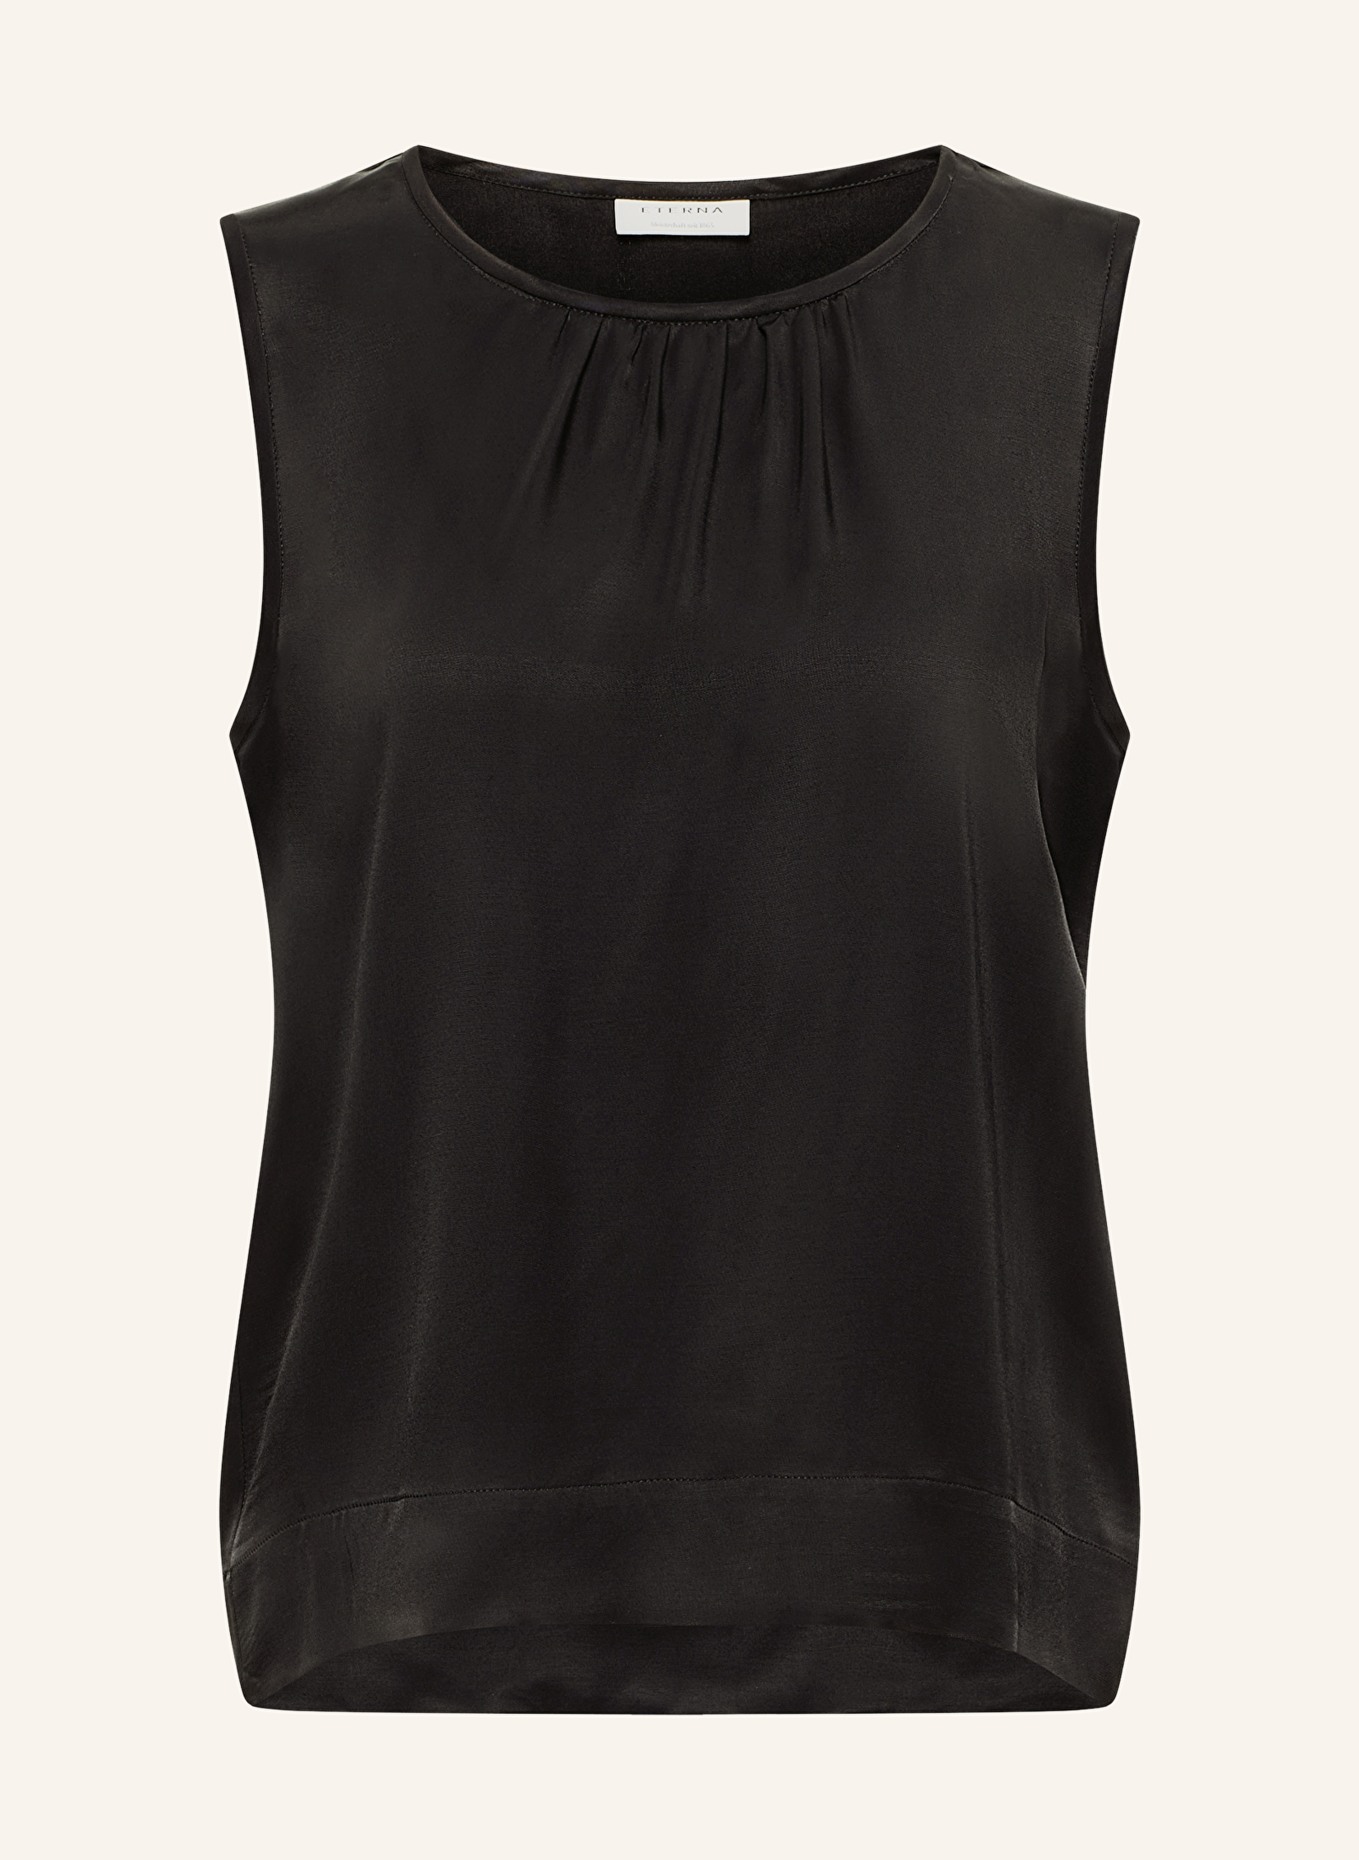 ETERNA Blouse top, Color: BLACK (Image 1)